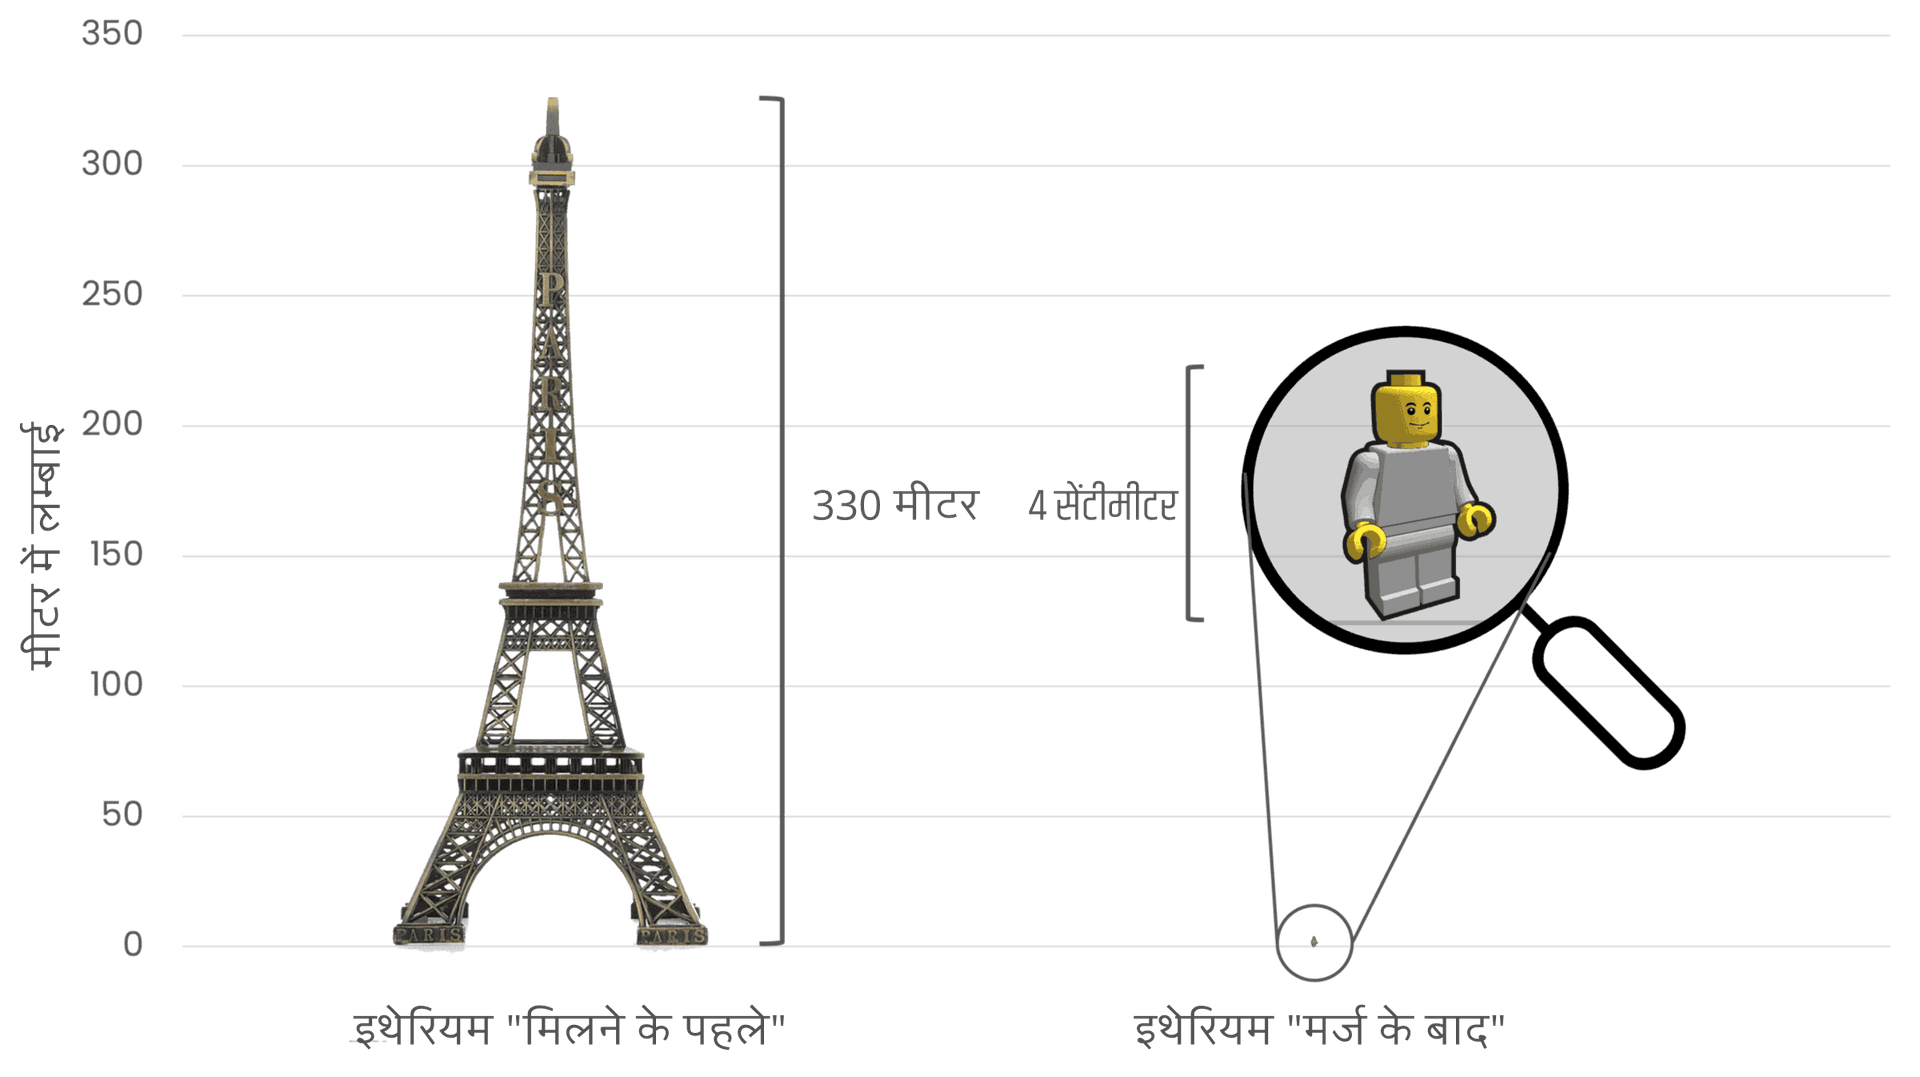 मर्ज से पहले और बाद में इथेरियम की ऊर्जा खपत की तुलना करते हुए, मर्ज से पहले उच्च ऊर्जा खपत का प्रतीक करने के लिए बाईं ओर एफिल टॉवर (330 मीटर लंबा) का उपयोग किया गया, और नाटकीय कमी का प्रतिनिधित्व करने के लिए दाईं ओर एक छोटा 4 सेमी लंबा लेगो चित्र बनाया गया जो मर्ज के बाद ऊर्जा का उपयोग दिखाता है